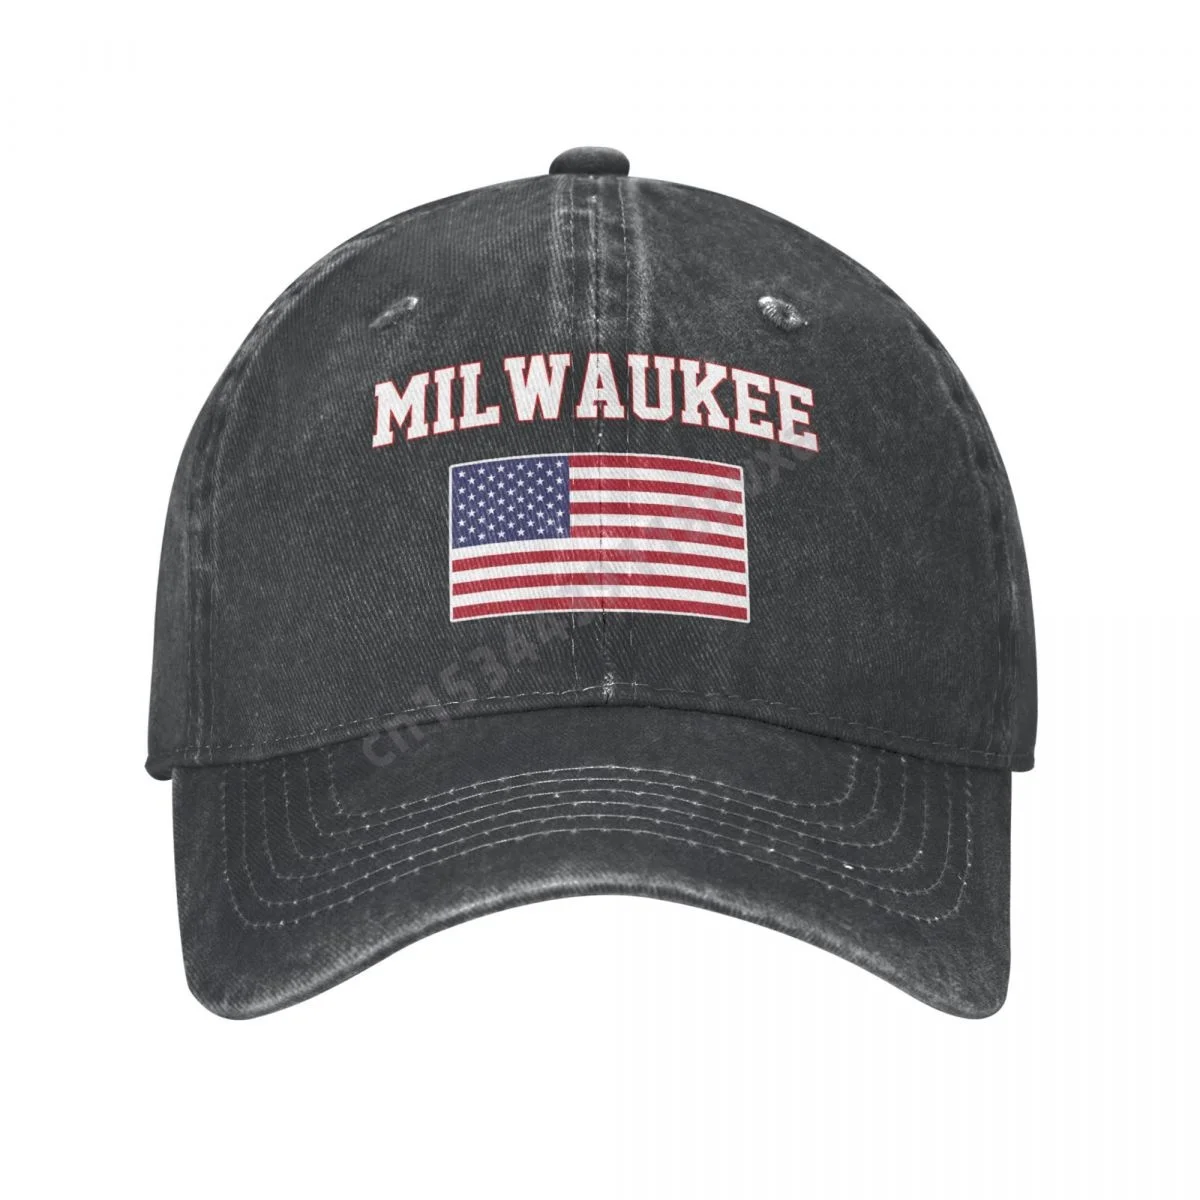 

Бейсболка Milwaukee с американским флагом США и городским угольным денимом, Классическая винтажная хлопковая кепка-тракер для мужчин